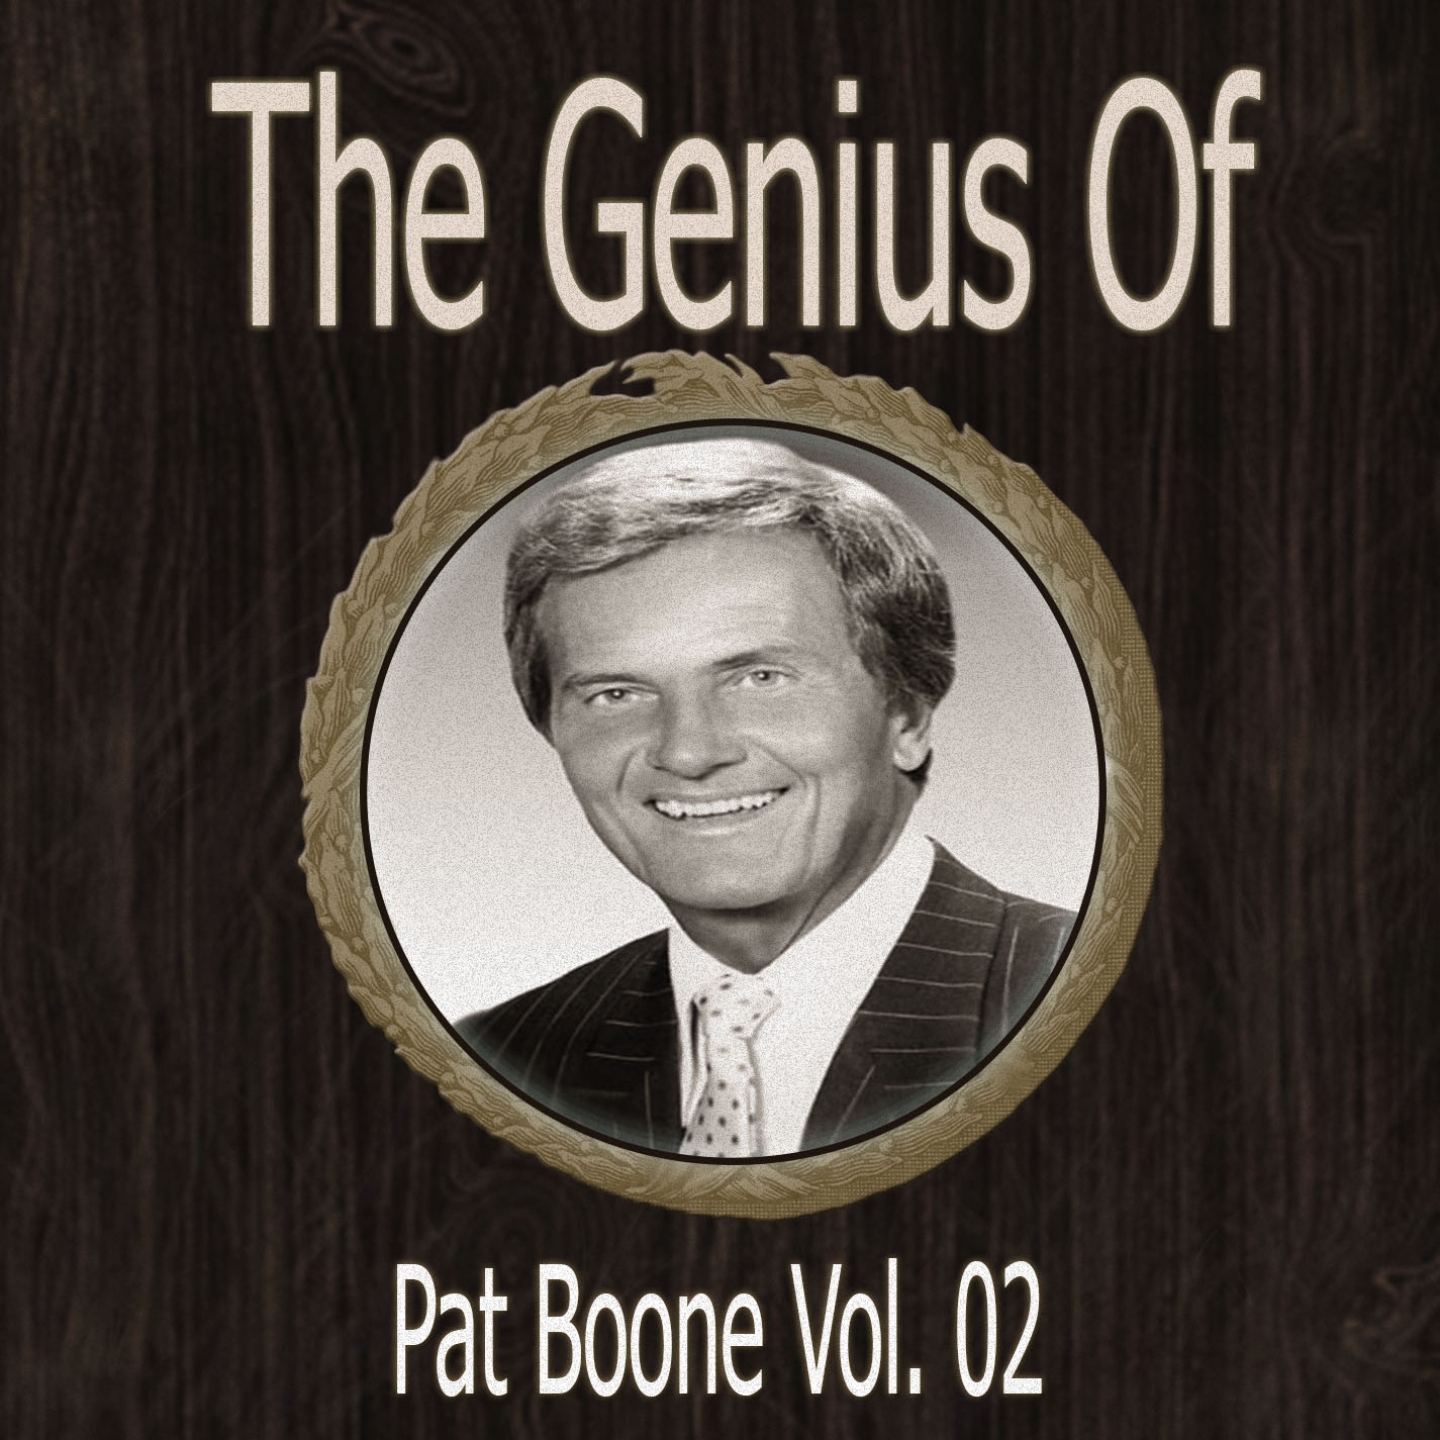 The Genius of Pat Boone Vol 02